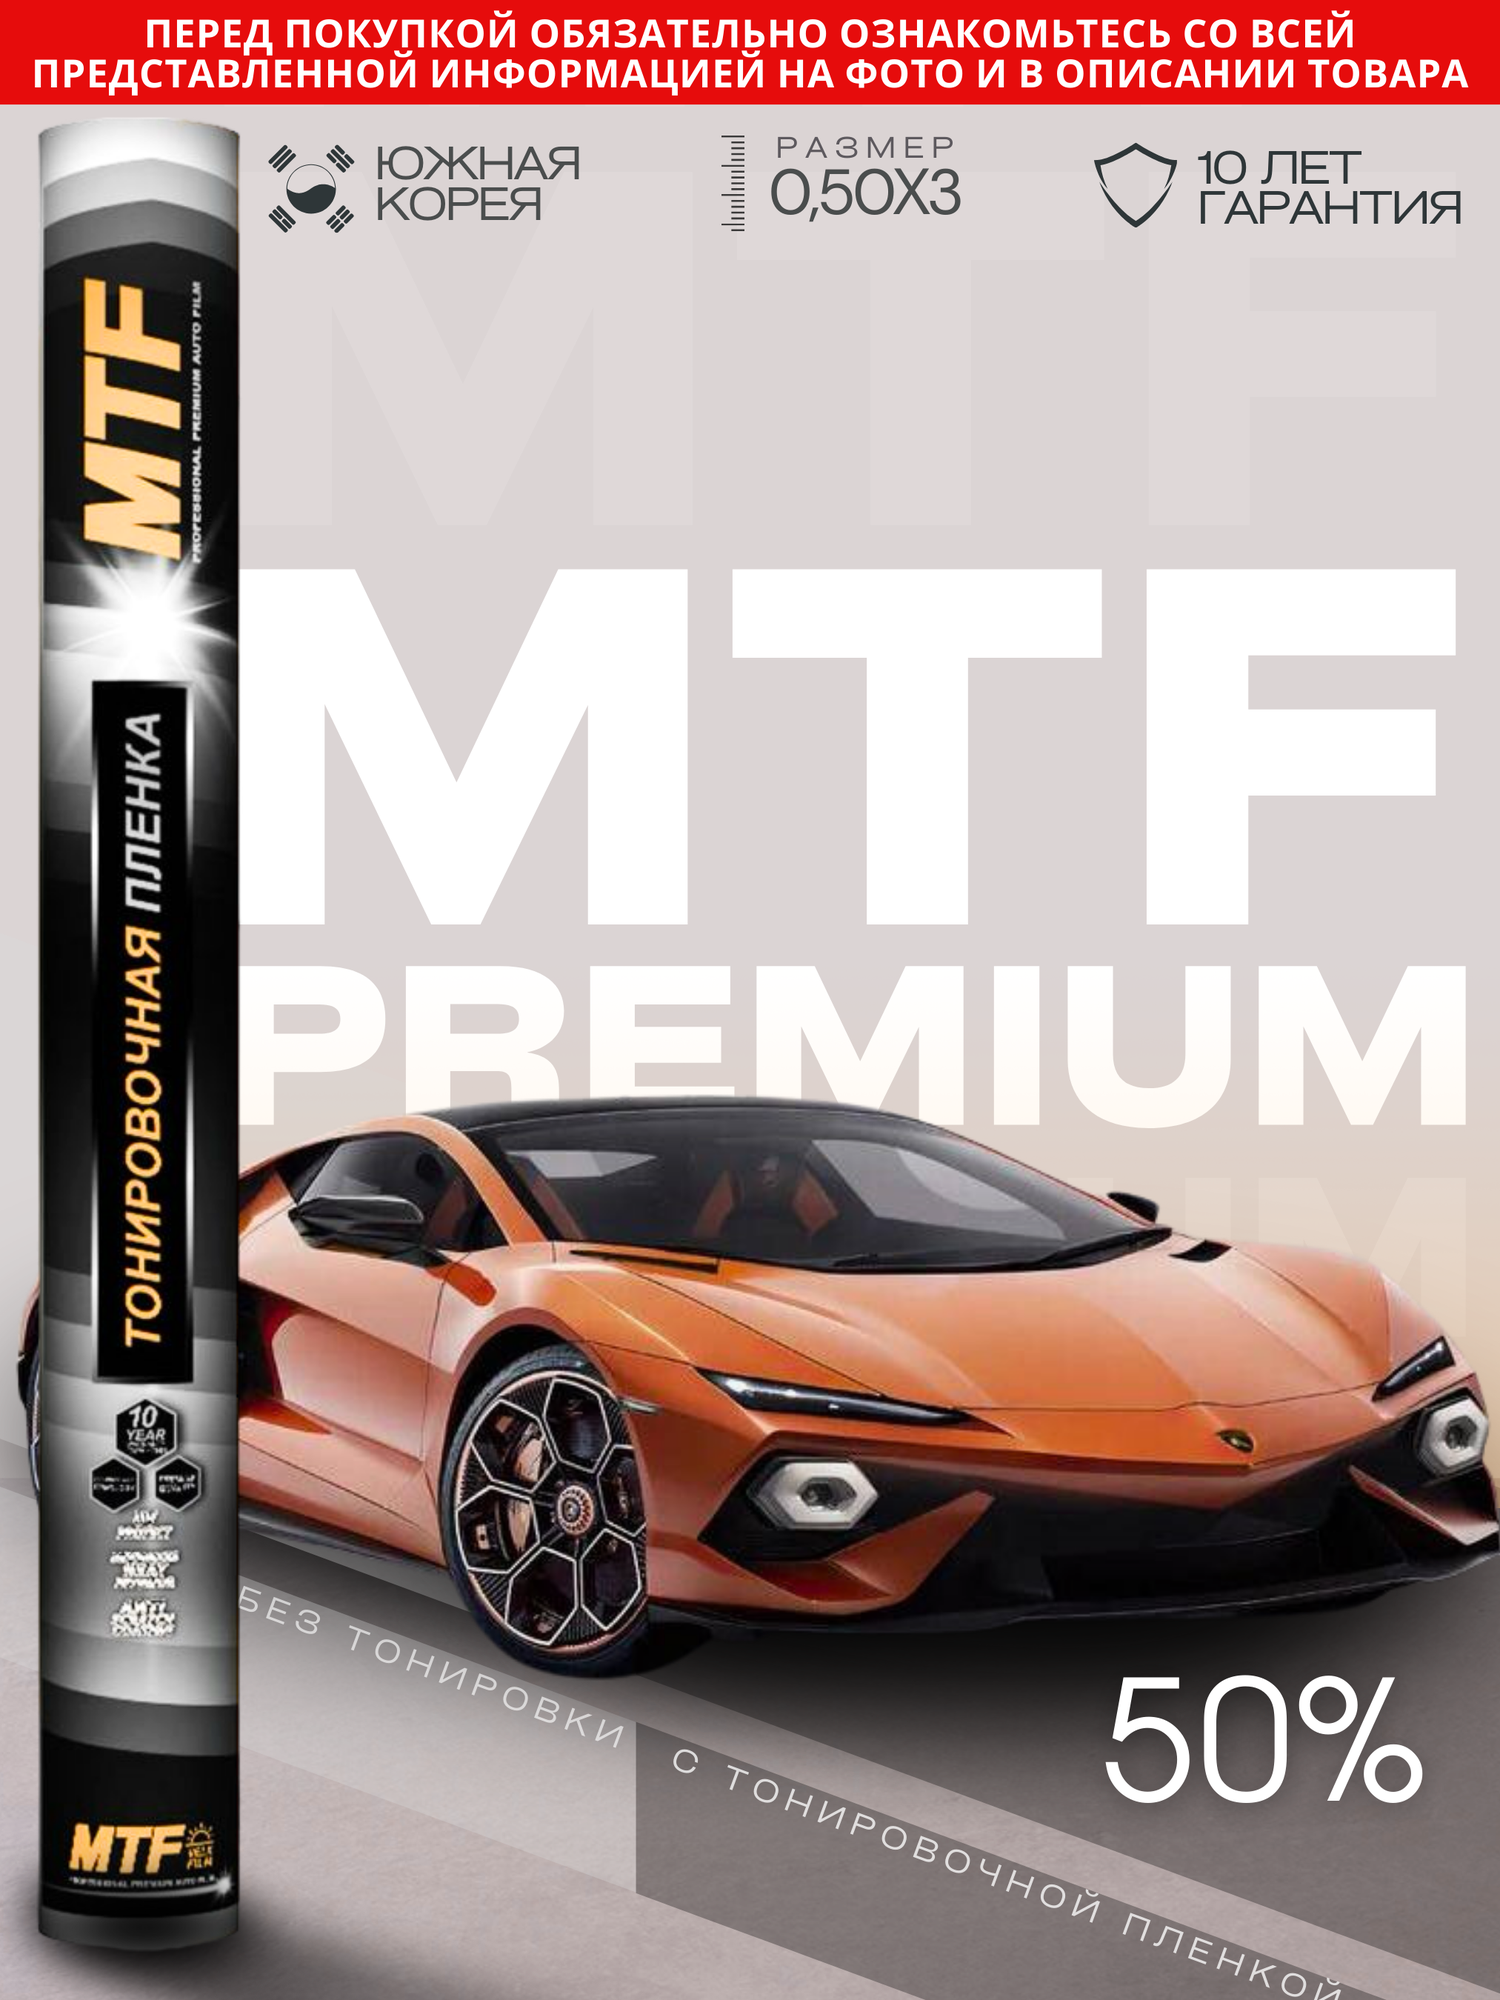 Пленка тонировочная "MTF Original" в тубе "Premium" 05% Сharcol (0.5м х 3м)